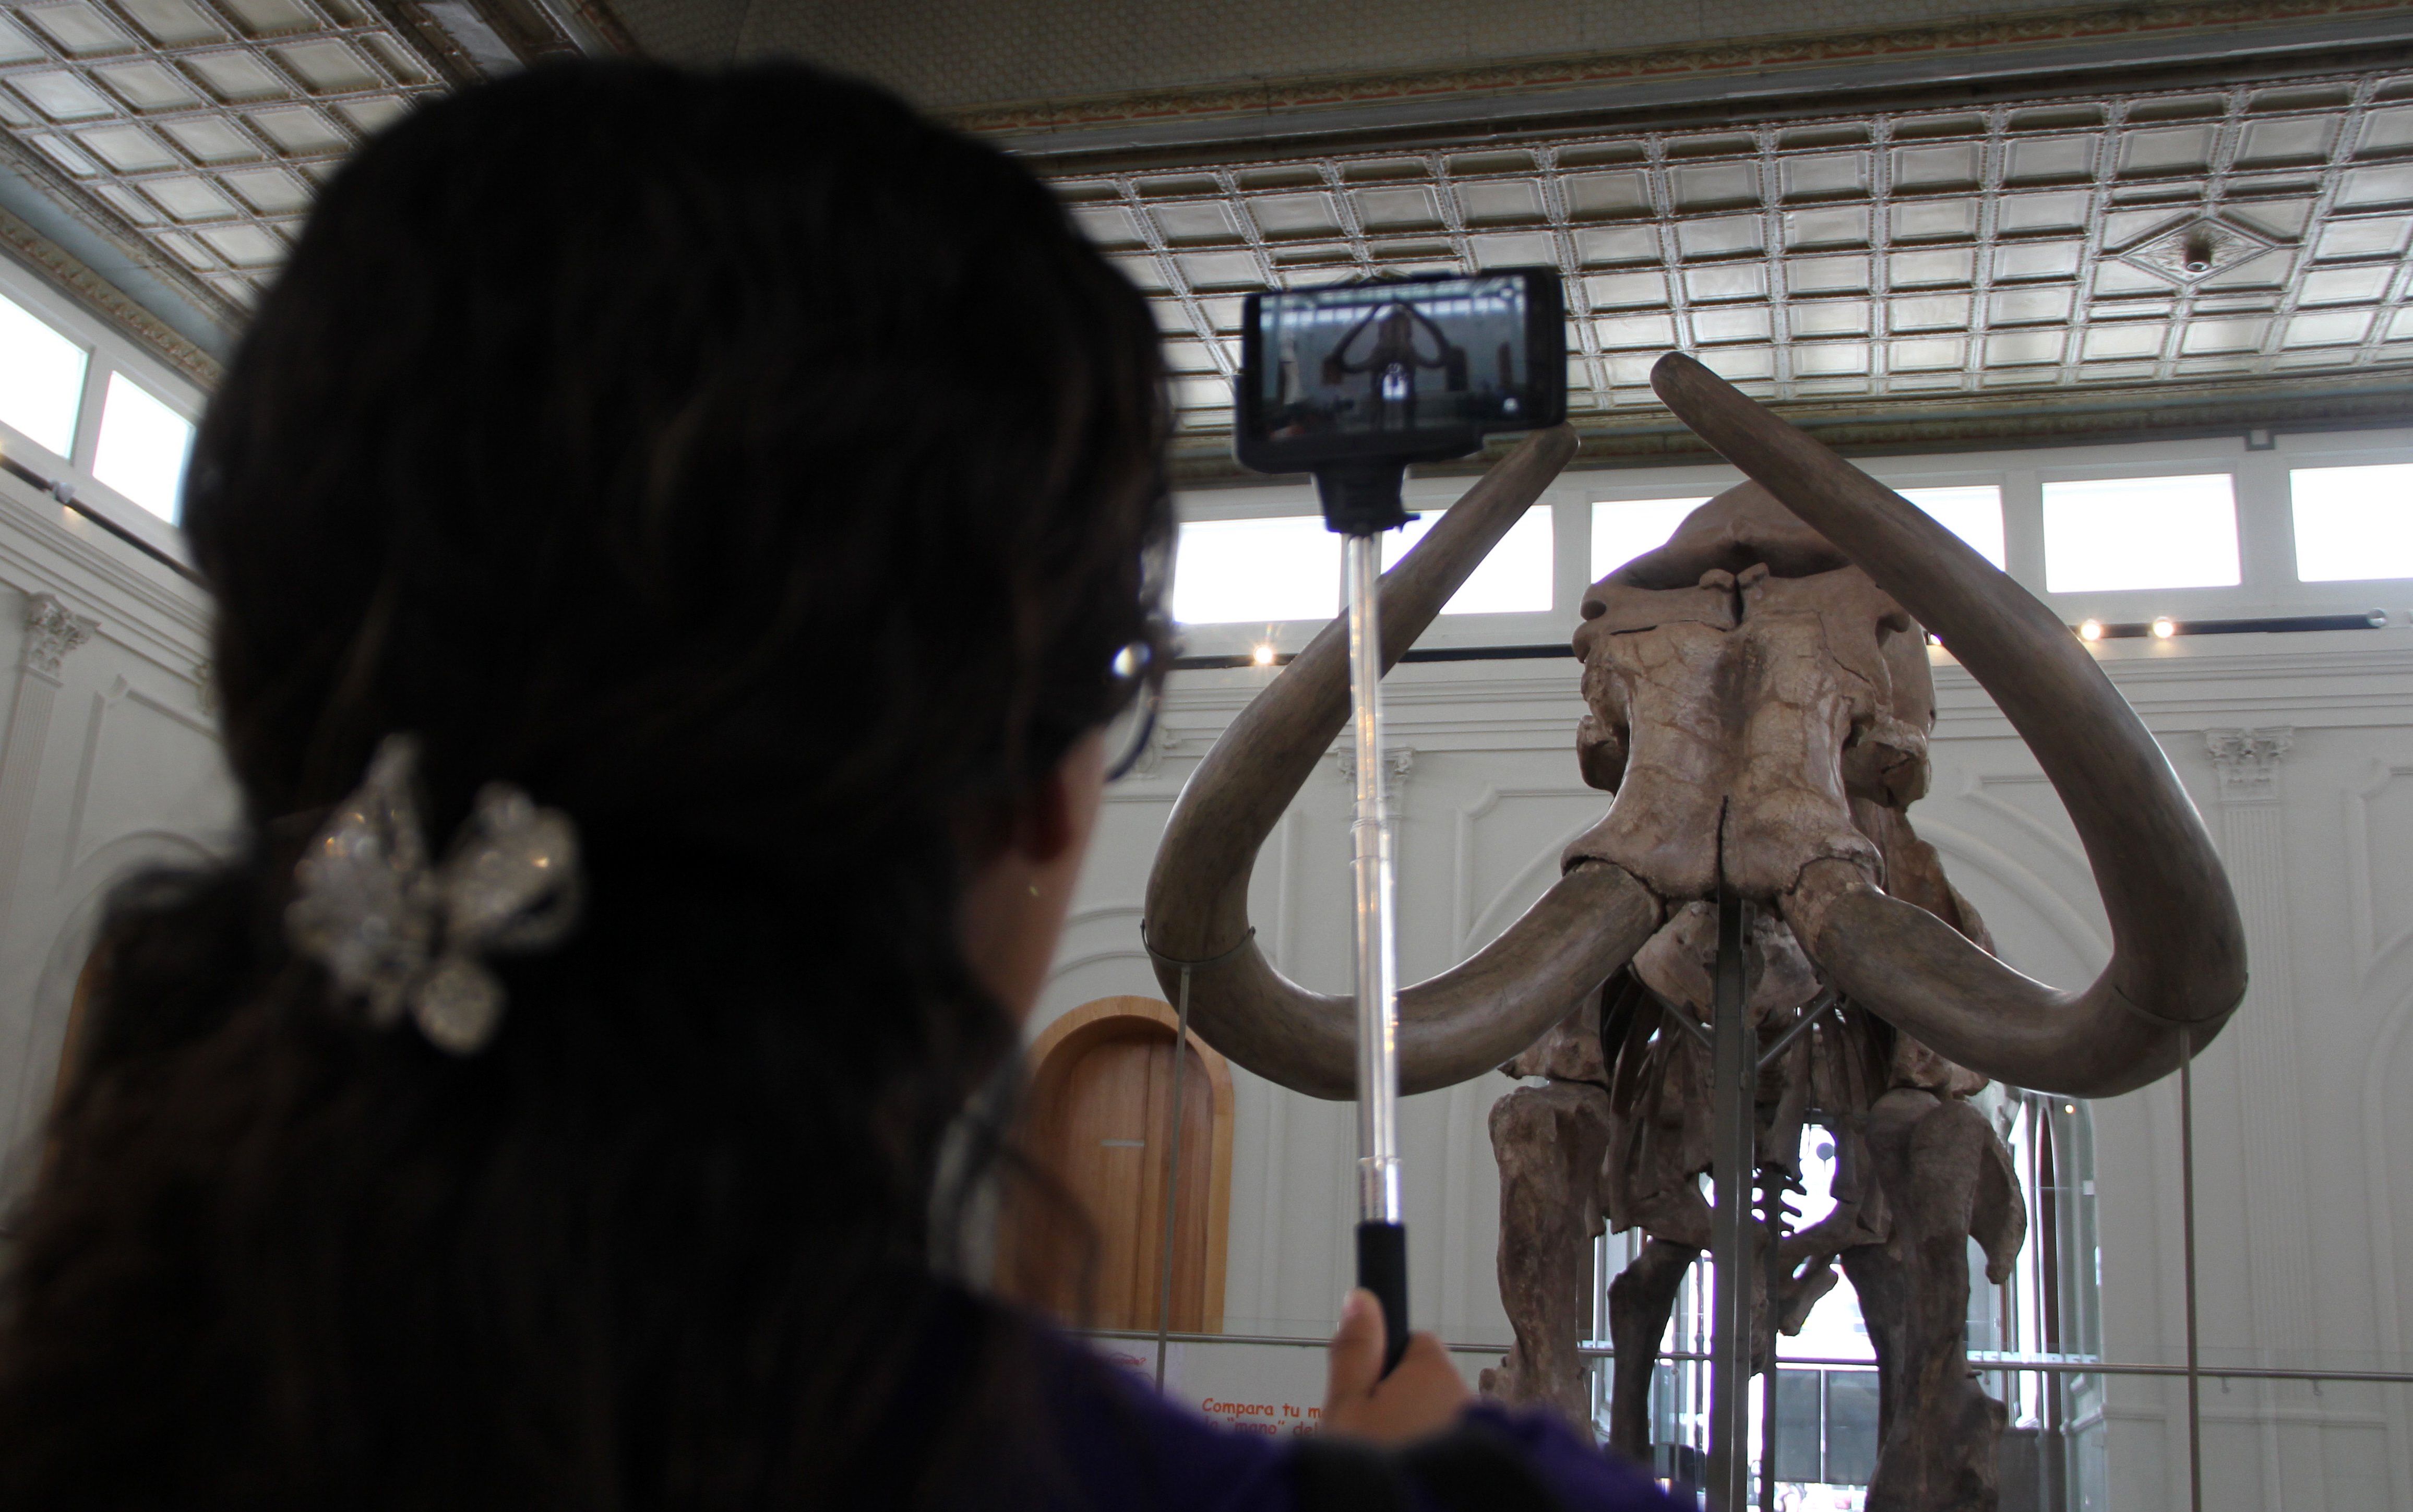 المكسيك تعرض هيكل عظمى ضخم لحيوان الماموث فى متحف